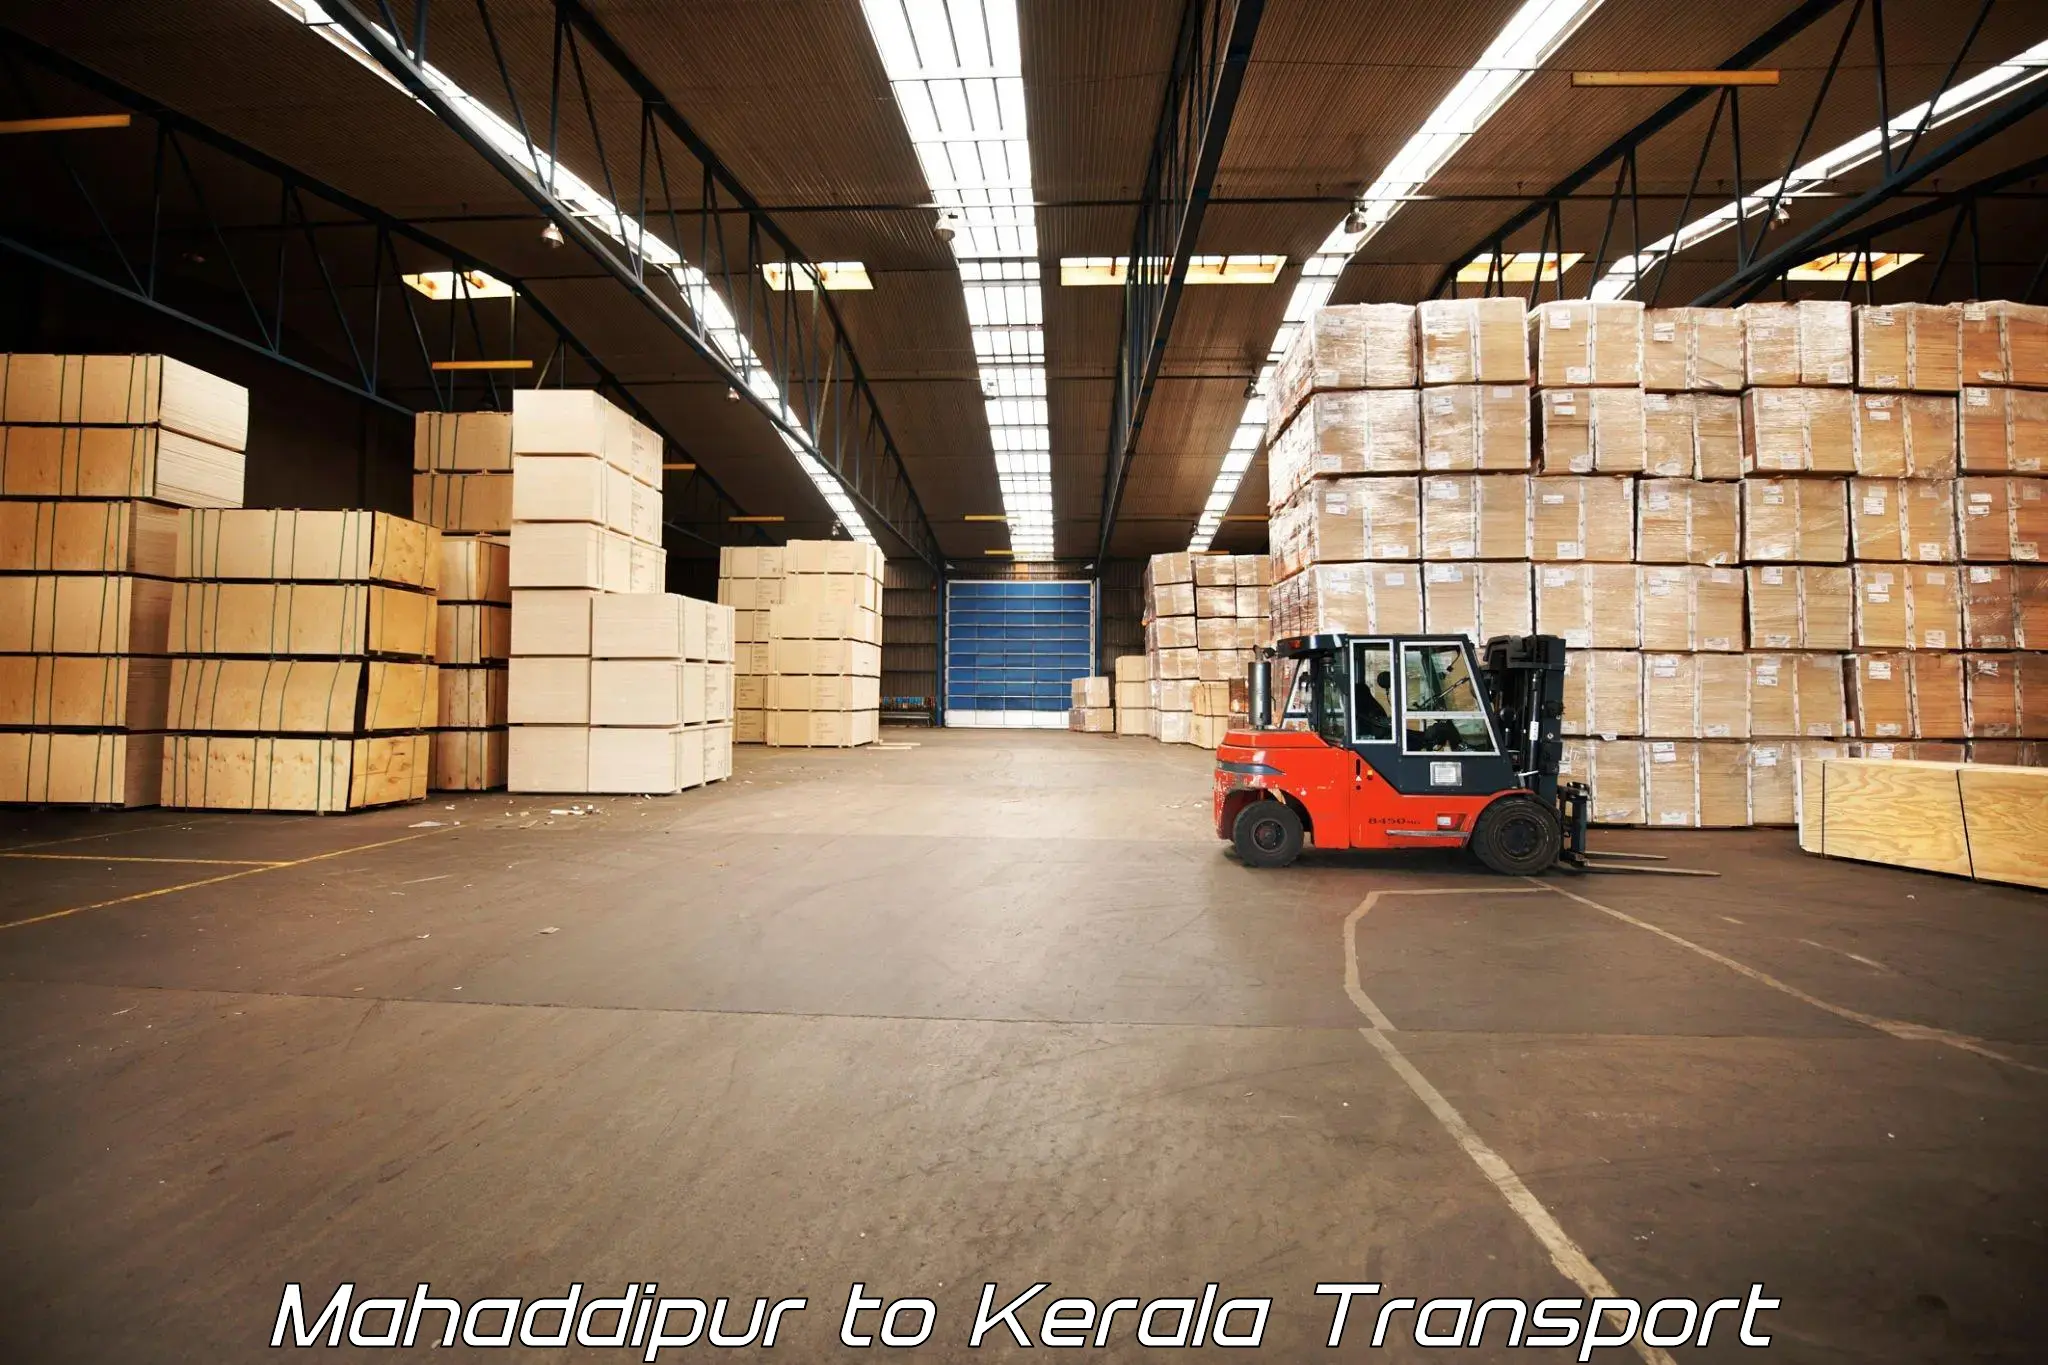 Shipping partner Mahaddipur to Kozhikode